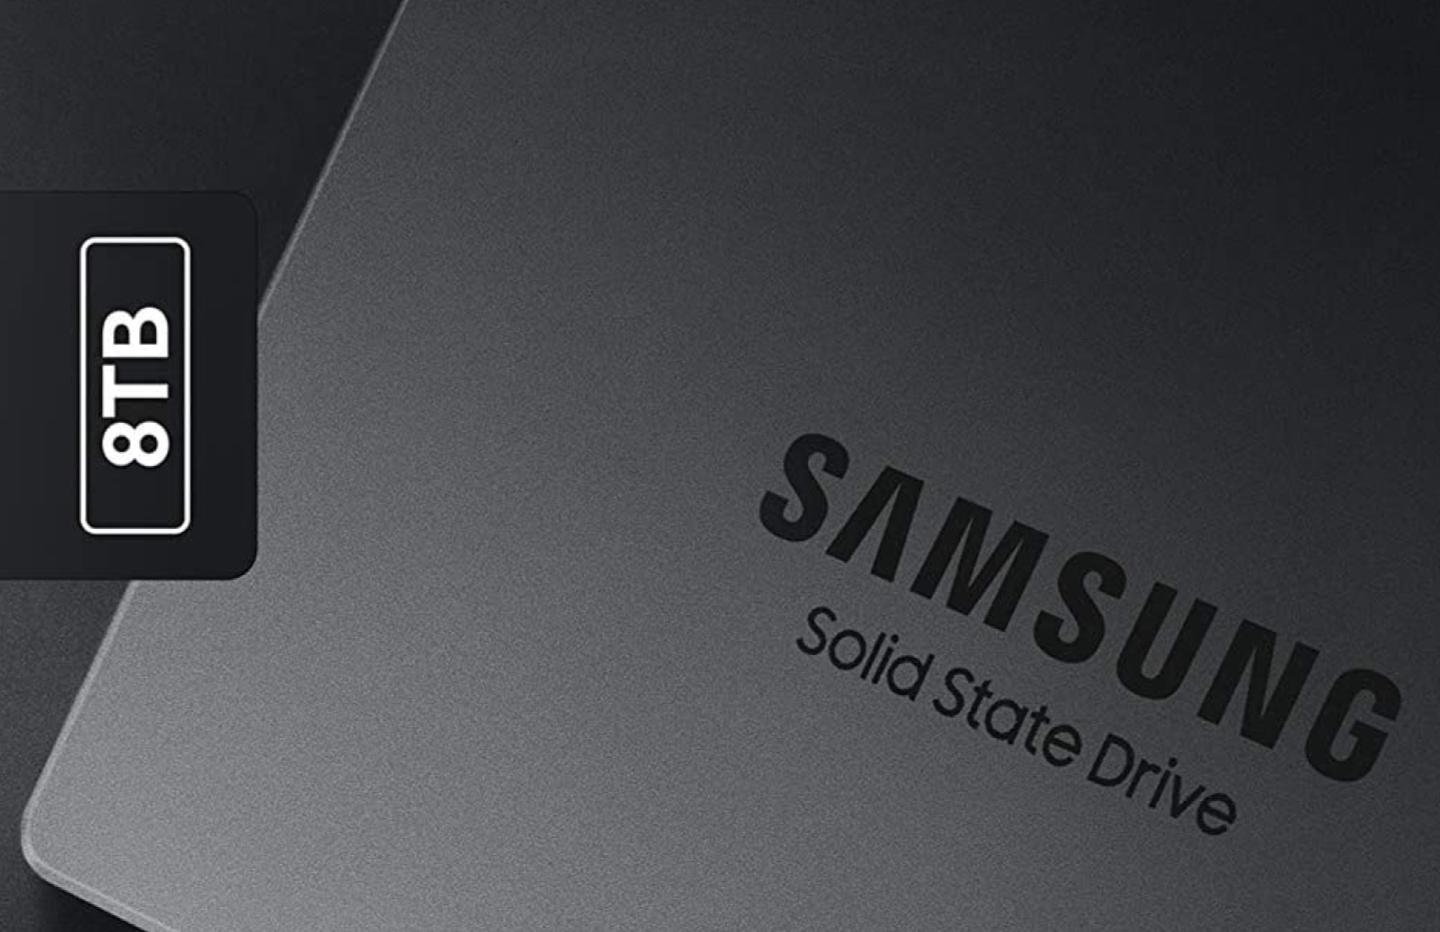 Samsung 870 QVO 8 To : meilleur prix et actualités - Les Numériques